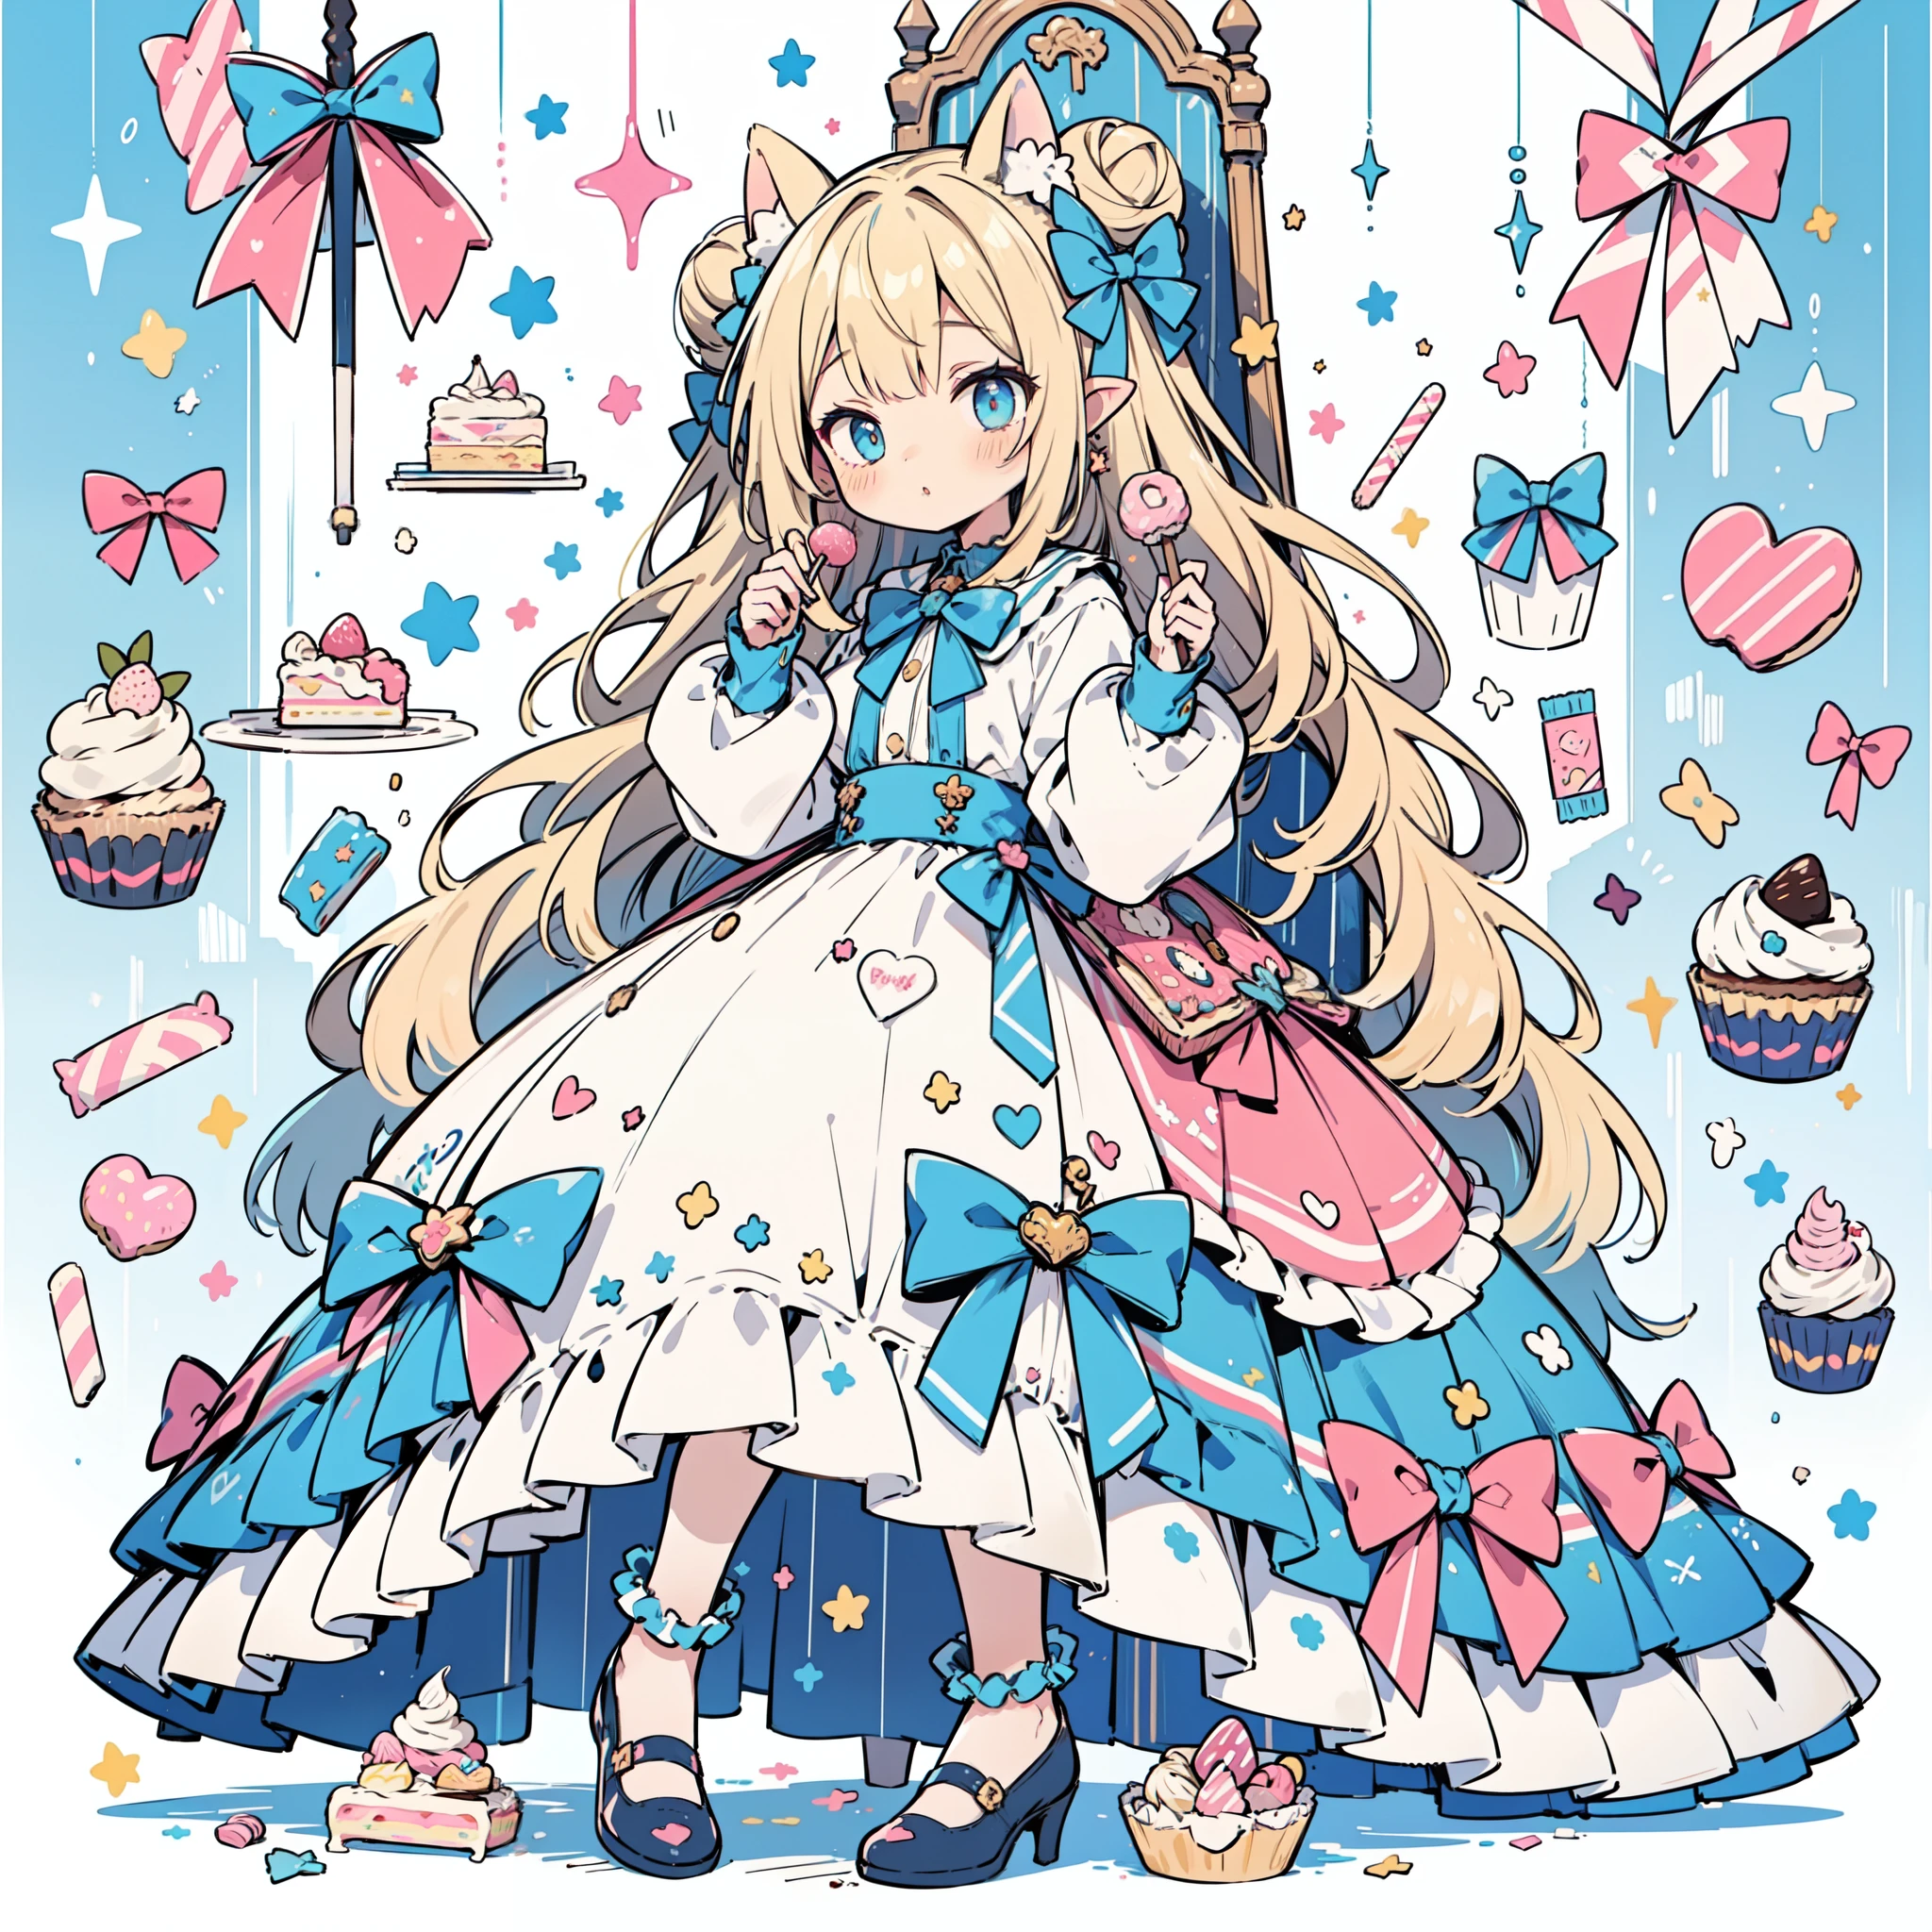 1 Mädchen, Pastellfarben in gedeckten Farben, (Farbpalette ist gelb:1.2, Blau:1.2, Rosa:1.2), (blonde with Blau hair buns), Kurzer modischer Rock, sitzt auf einem Thron aus Süßigkeiten und Gebäck, zum Beispiel Donuts, Sträusel, Süßigkeiten, lollipops, Süßigkeitencane, Kuchen, cupKuchens, Kuchenpops, Rüschen und Spitze, Polka-Dot-Muster, lange Fledermausohren